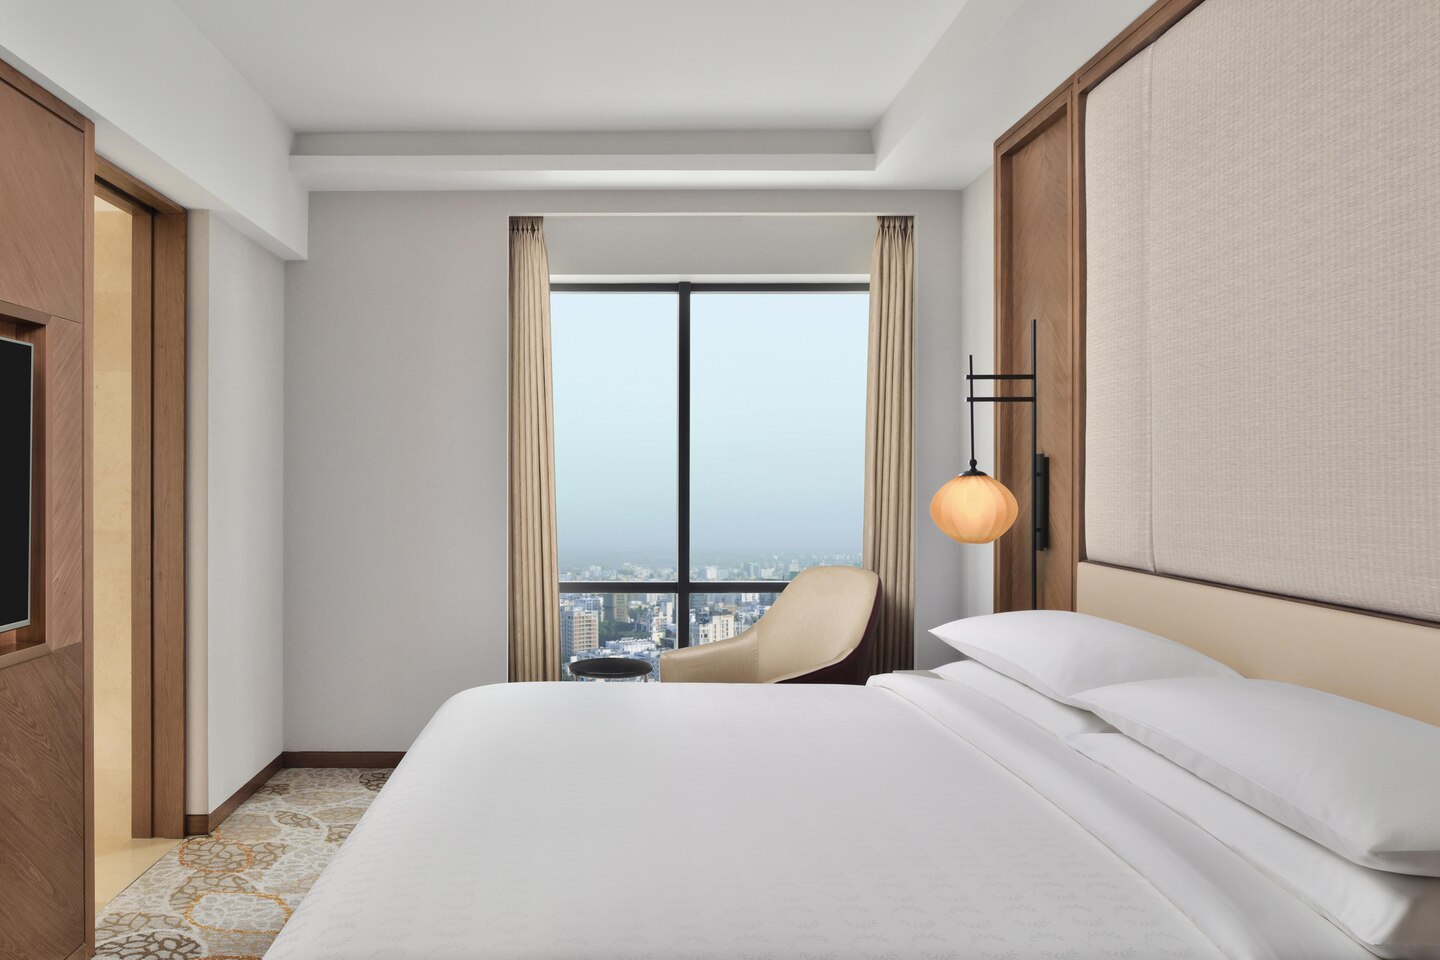 Projet d'hôtel Queen Hotel Bedroom Factory Design moderne Mobilier d'hôtel attrayant